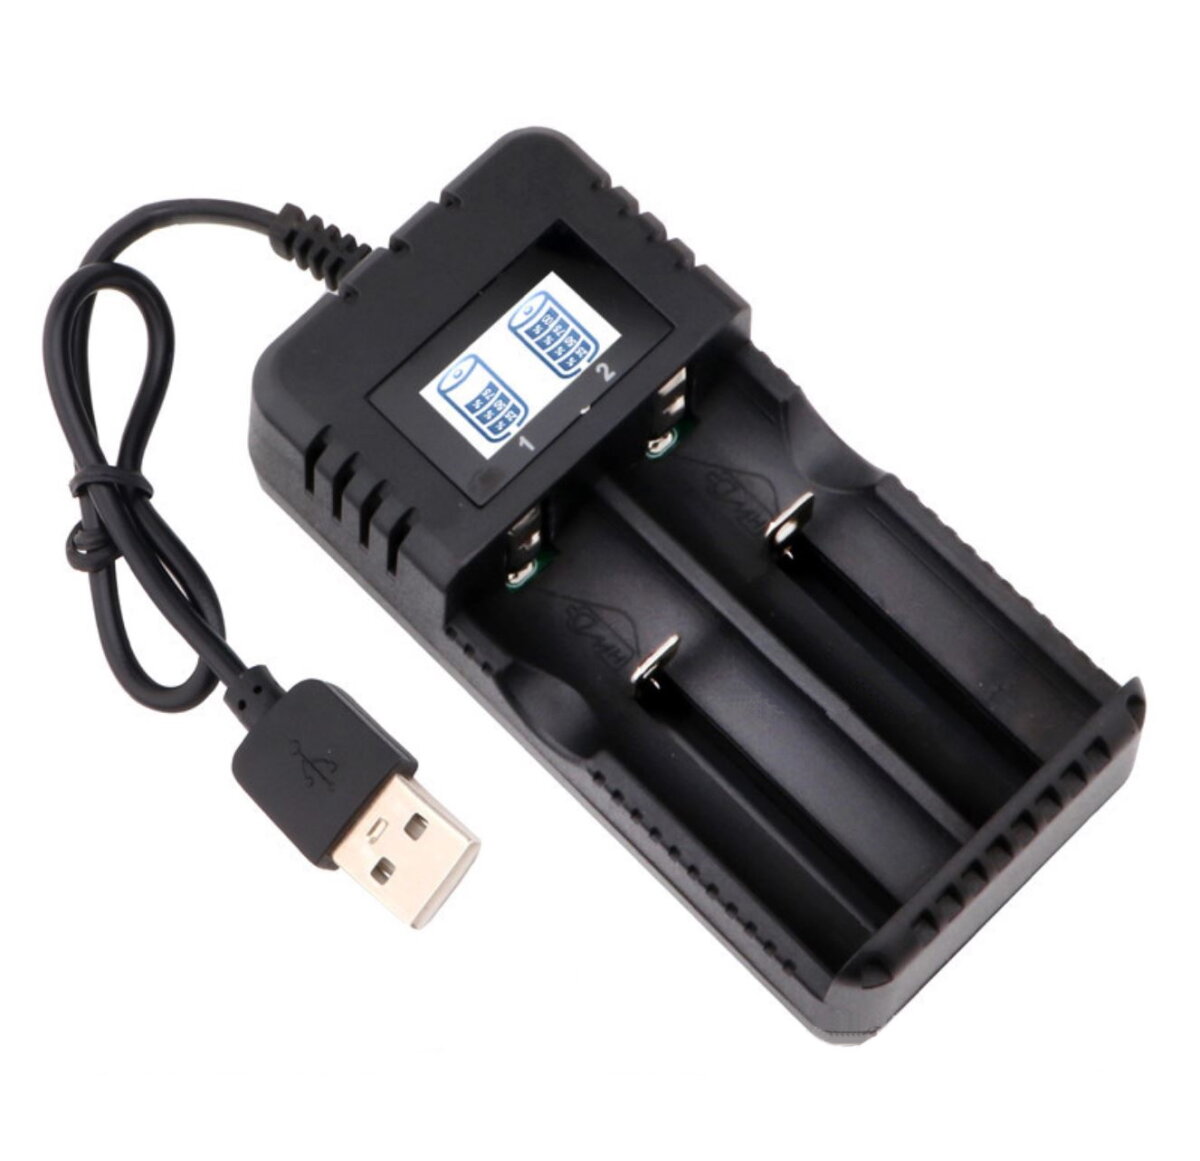 Зарядное устройство для литий-ионных аккумуляторов USB HD-8991B